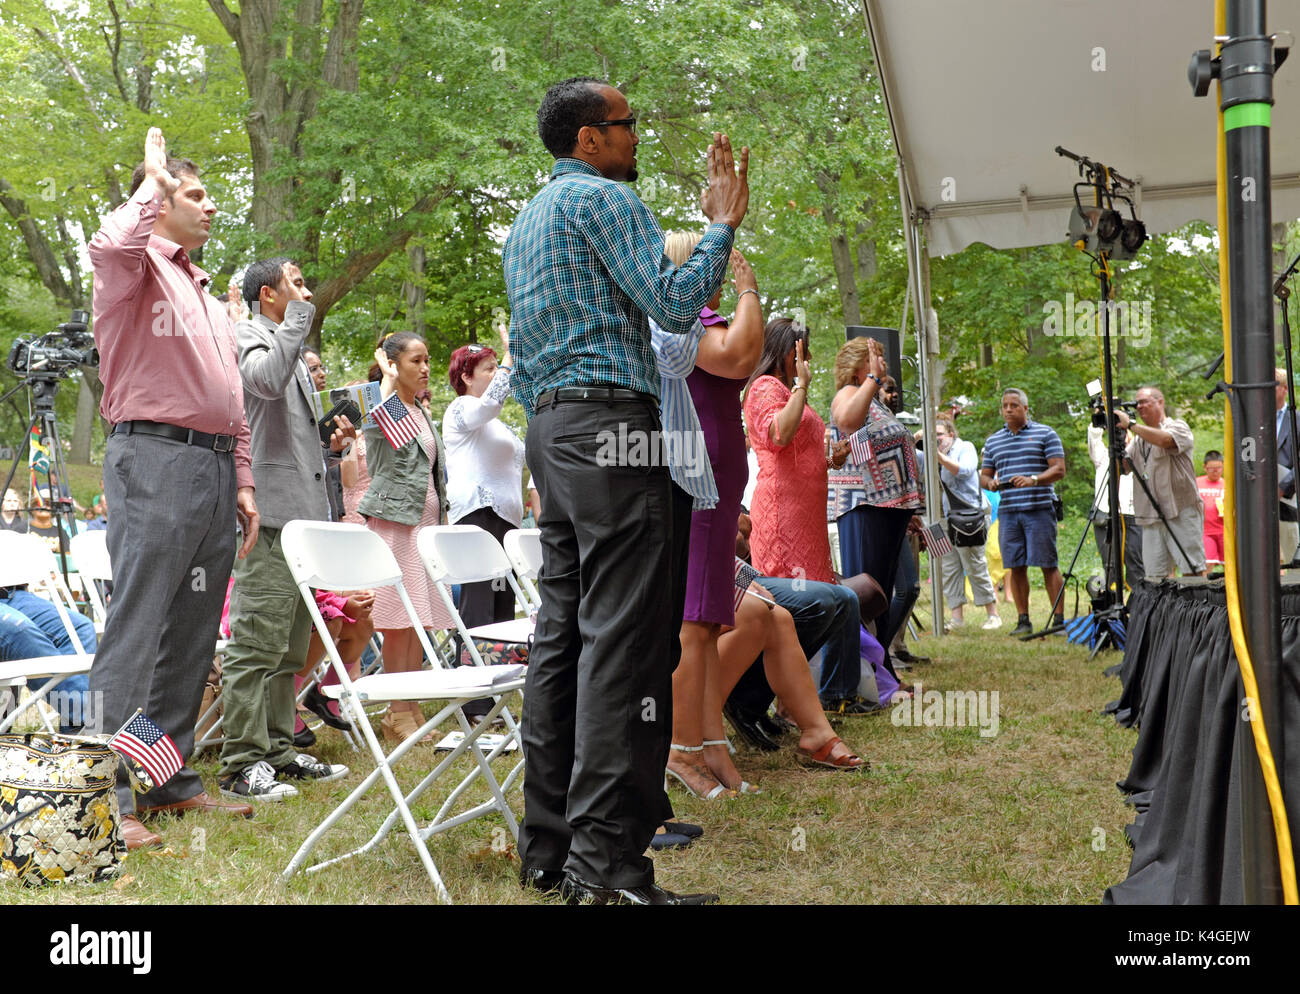 En la ceremonia de juramentación en el exterior nuevos ciudadanos estadounidenses durante las festividades del día de one world en los jardines culturales de Cleveland, Ohio, EE.UU. Foto de stock